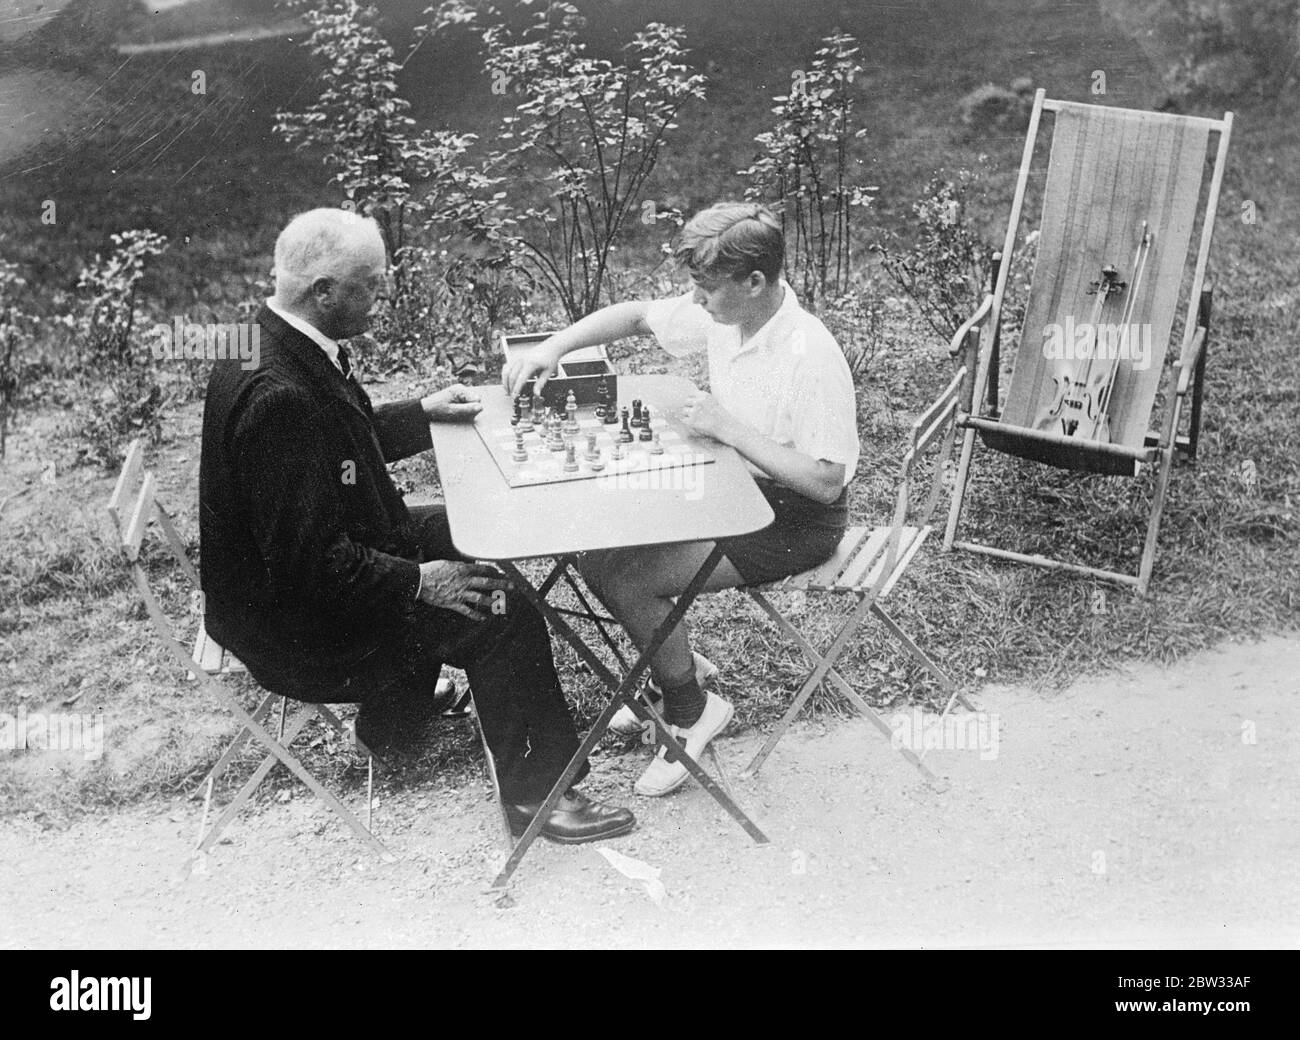 Berühmte junge Geiger, Yehudi Menuhin, im Urlaub. Yehudi Menuhin, der 15-jährige Junggeiger, der bereits Weltruhm erlangt hat, verbringt einen Urlaub in der Nähe von Paris, bevor er für eine Saison nach London kommt. Er wird später im Jahr Amerika Touren. Yehudi Menuhin genießt eine Partie Schach mit einem alten Freund im Garten seines Ferienhauses in der Nähe von Paris. 22. September 1932 Stockfoto